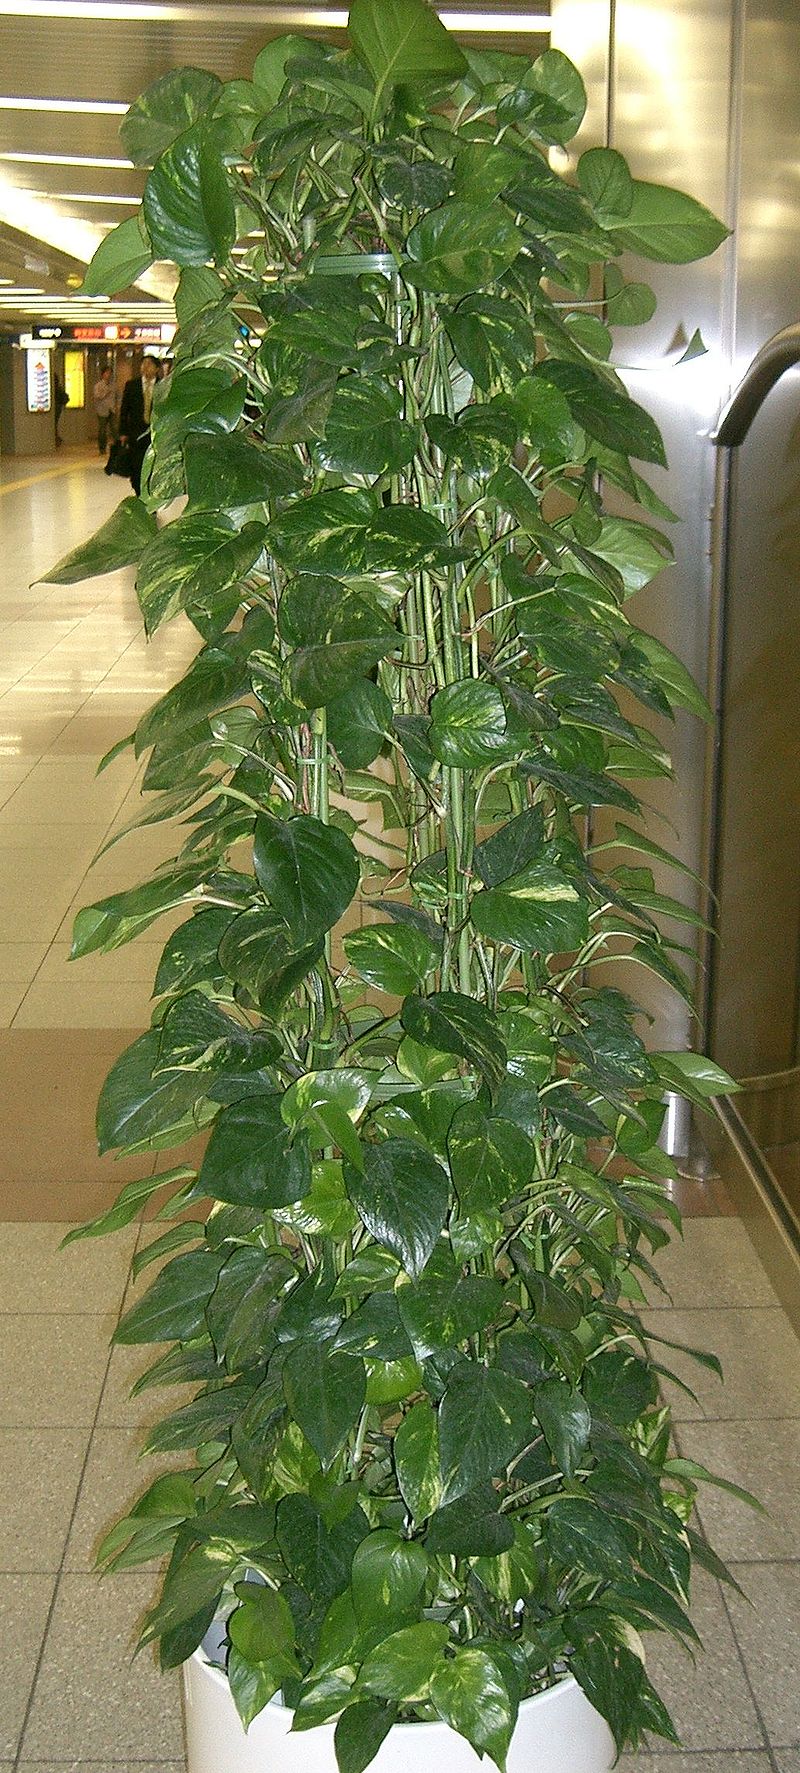 Planta de interior - Wikipedia, la enciclopedia libre